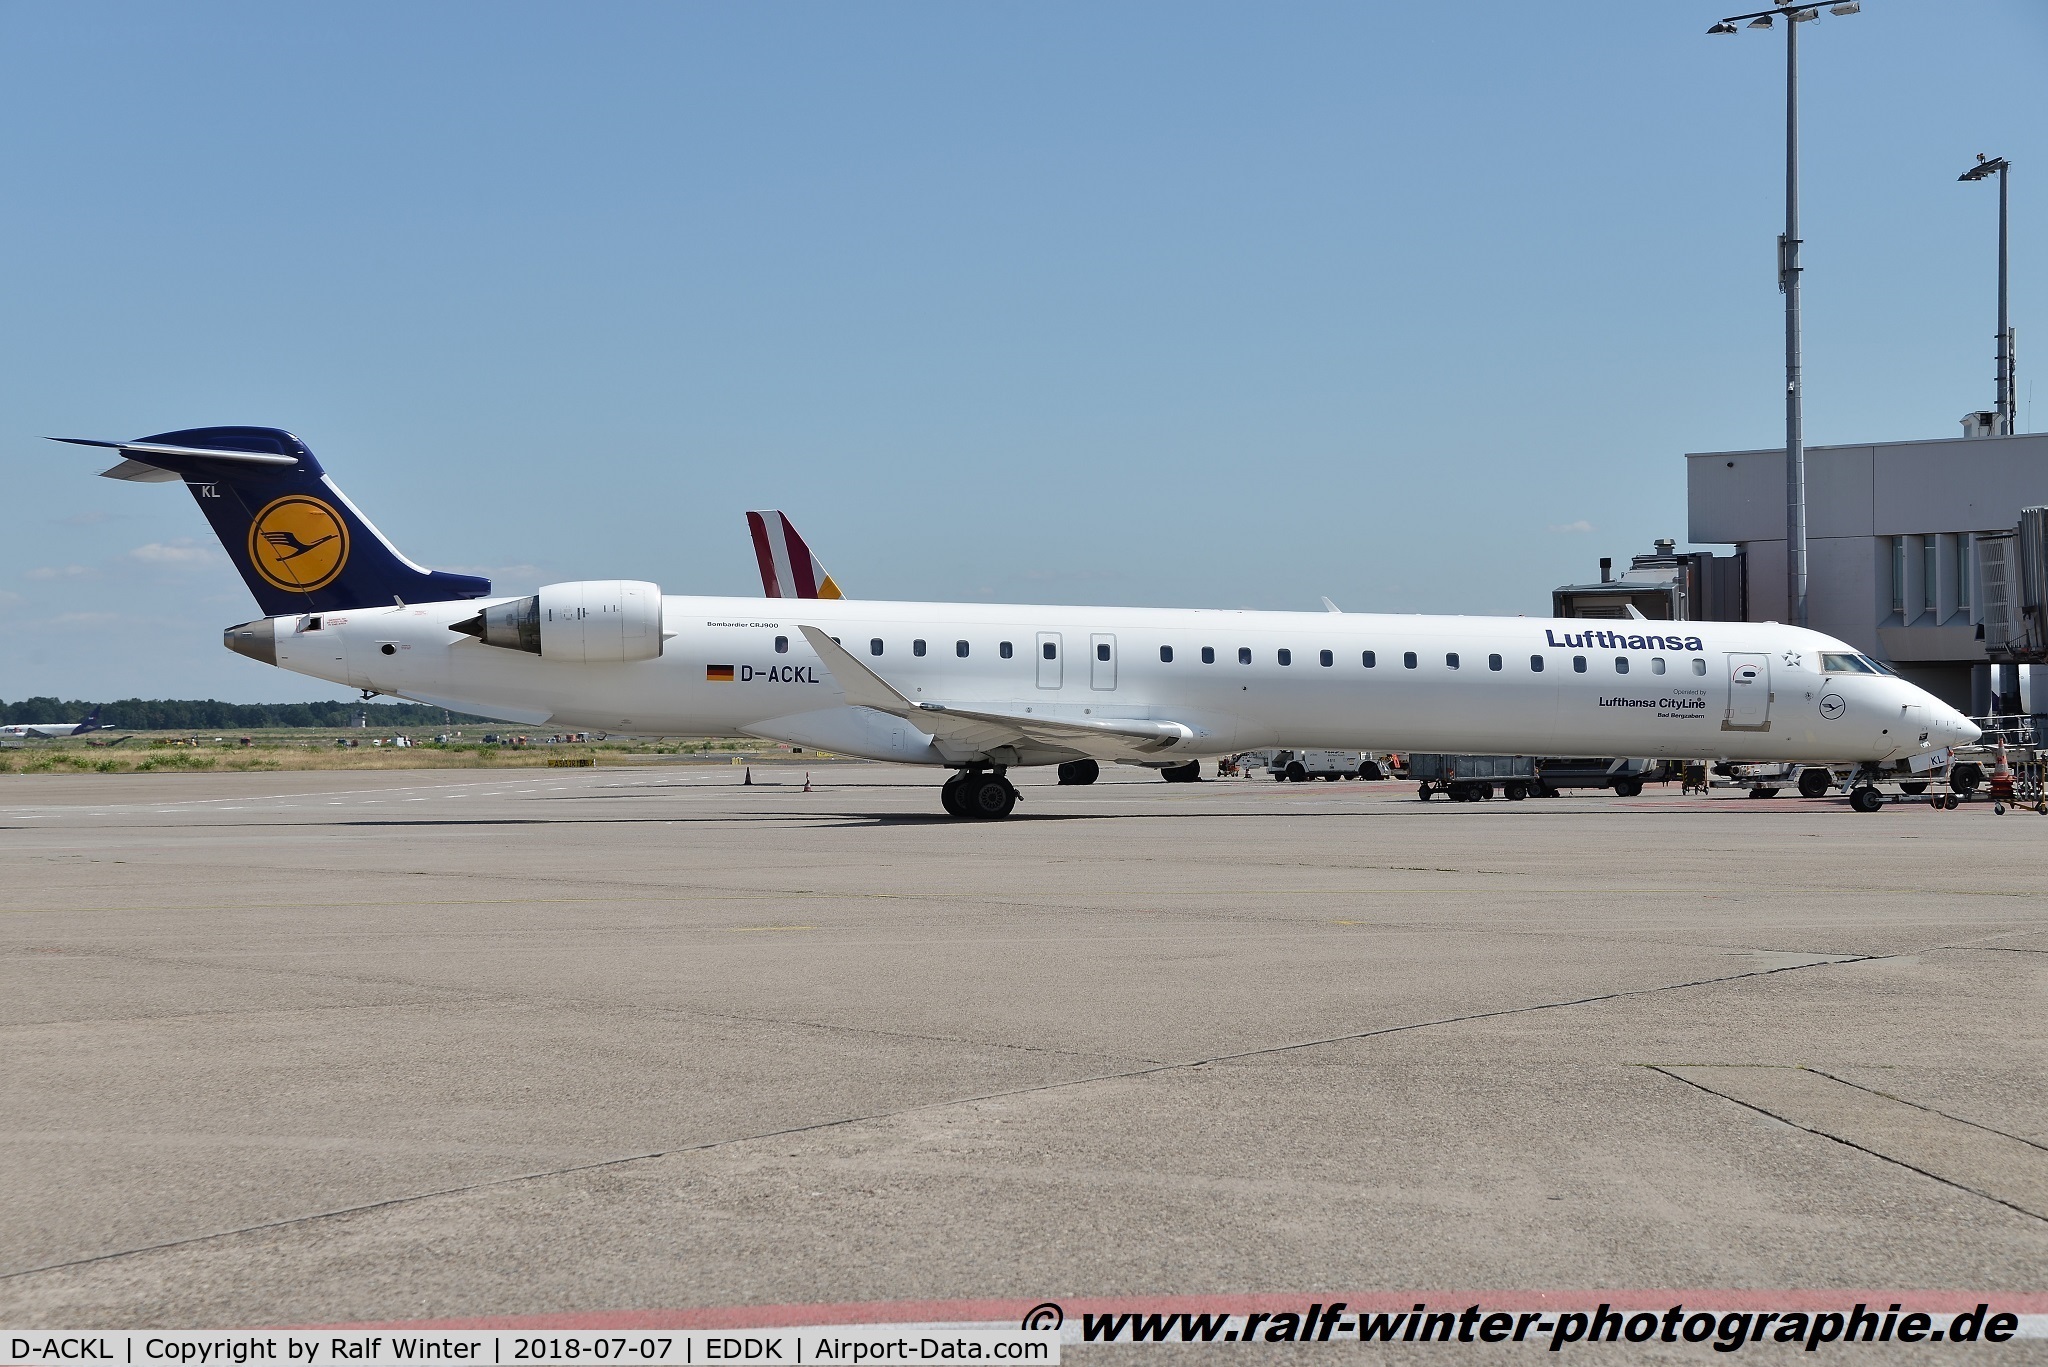 D-ACKL, 2006 Bombardier CRJ-900LR (CL-600-2D24) C/N 15095, Bombardier CL-600-2D24 CRJ-900 - CL CLH Lufthansa CityLine 'Bad Bergzabern' - 15095 - D-ACKL - 07.07.2018 - CGN